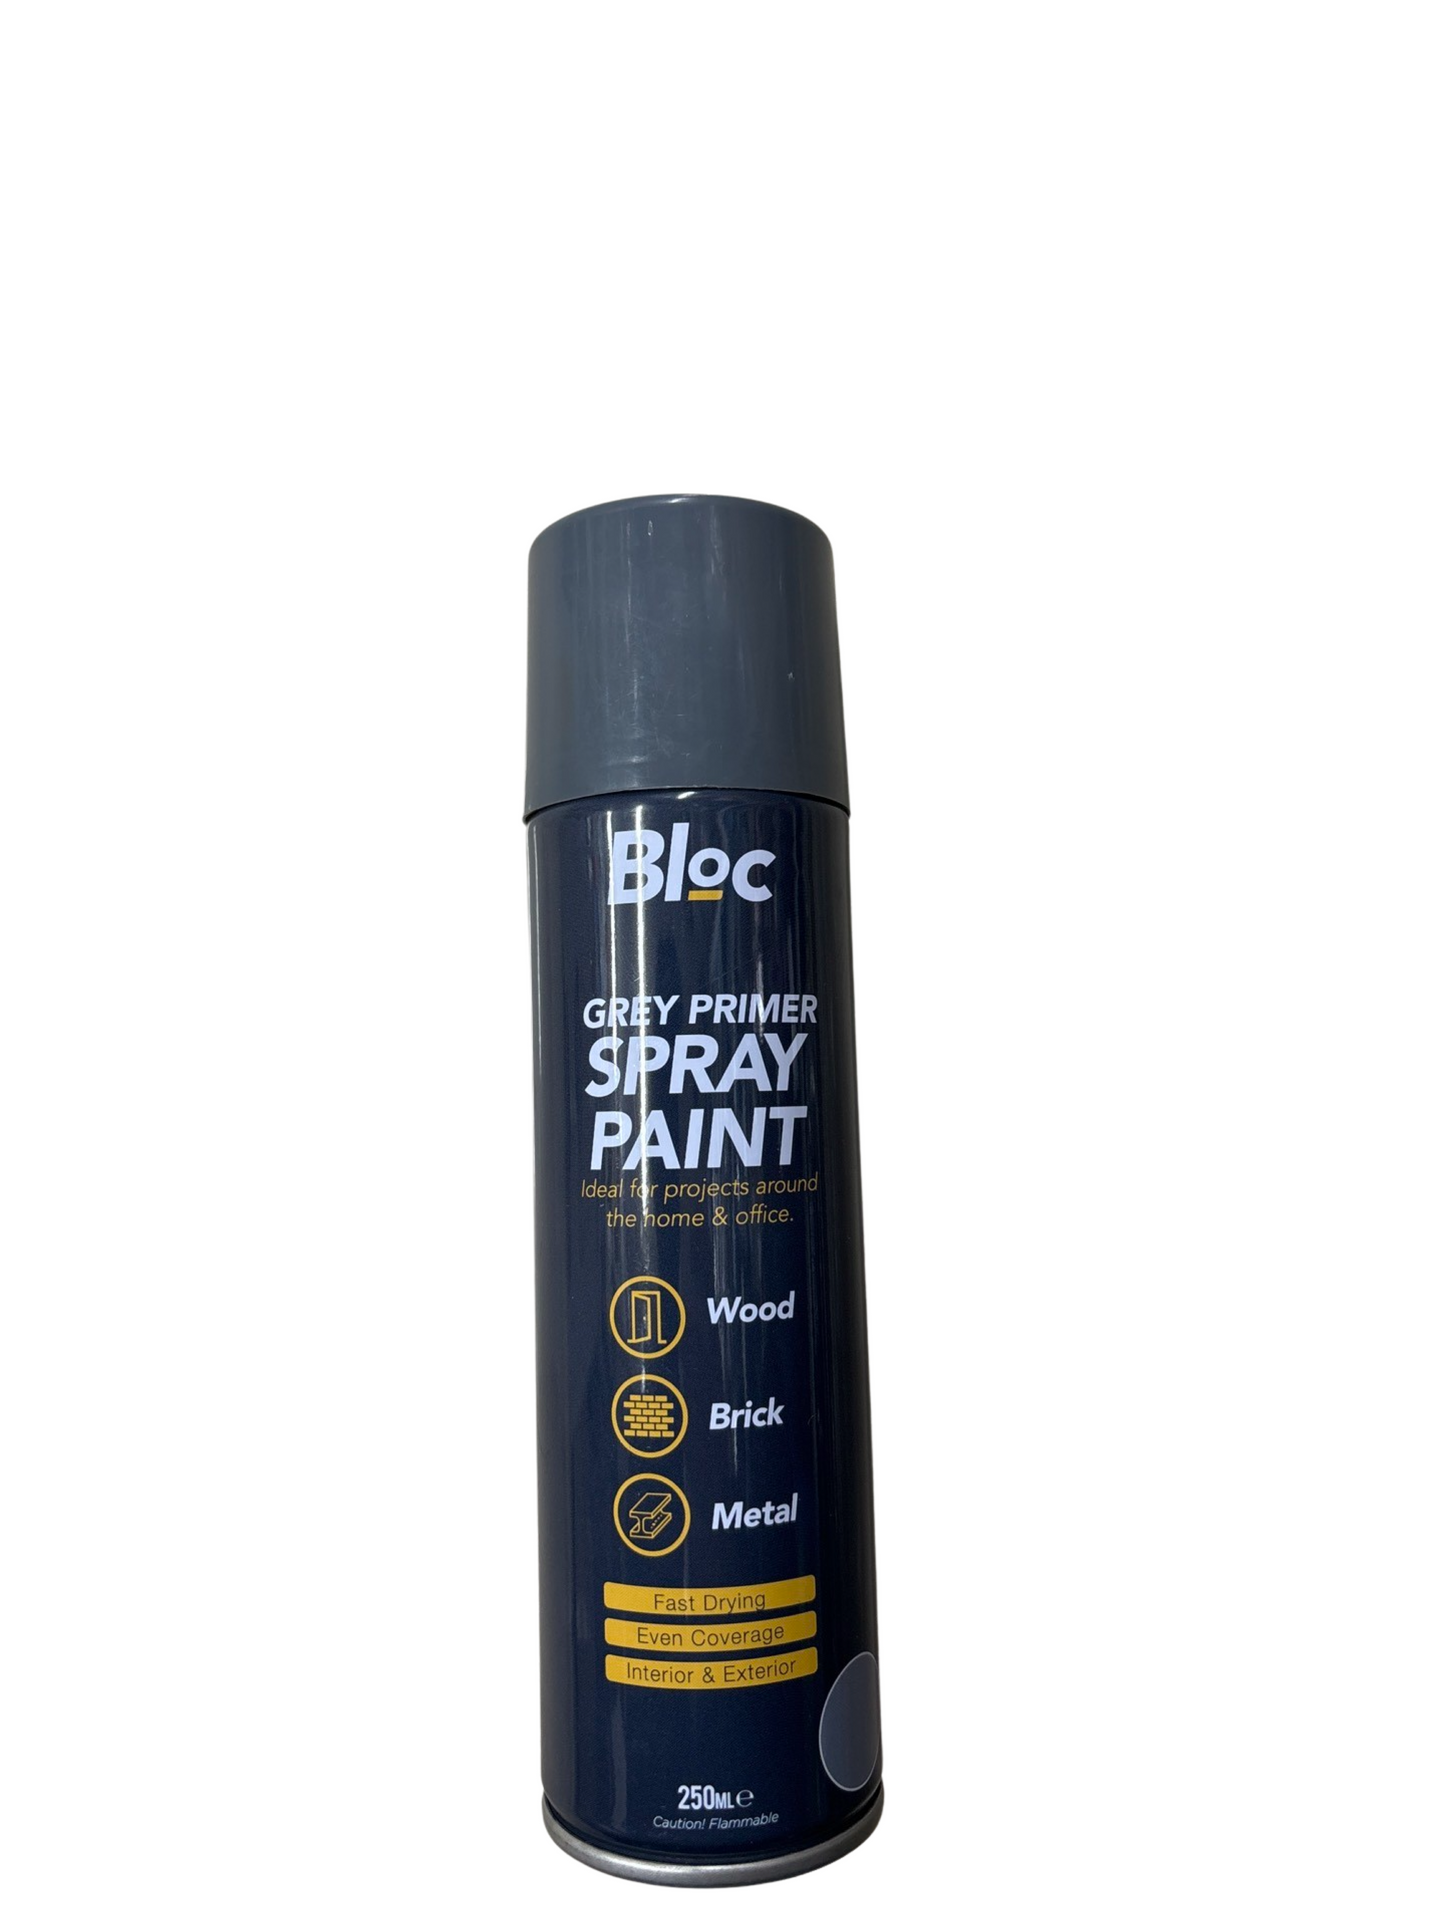 Gray spray paint